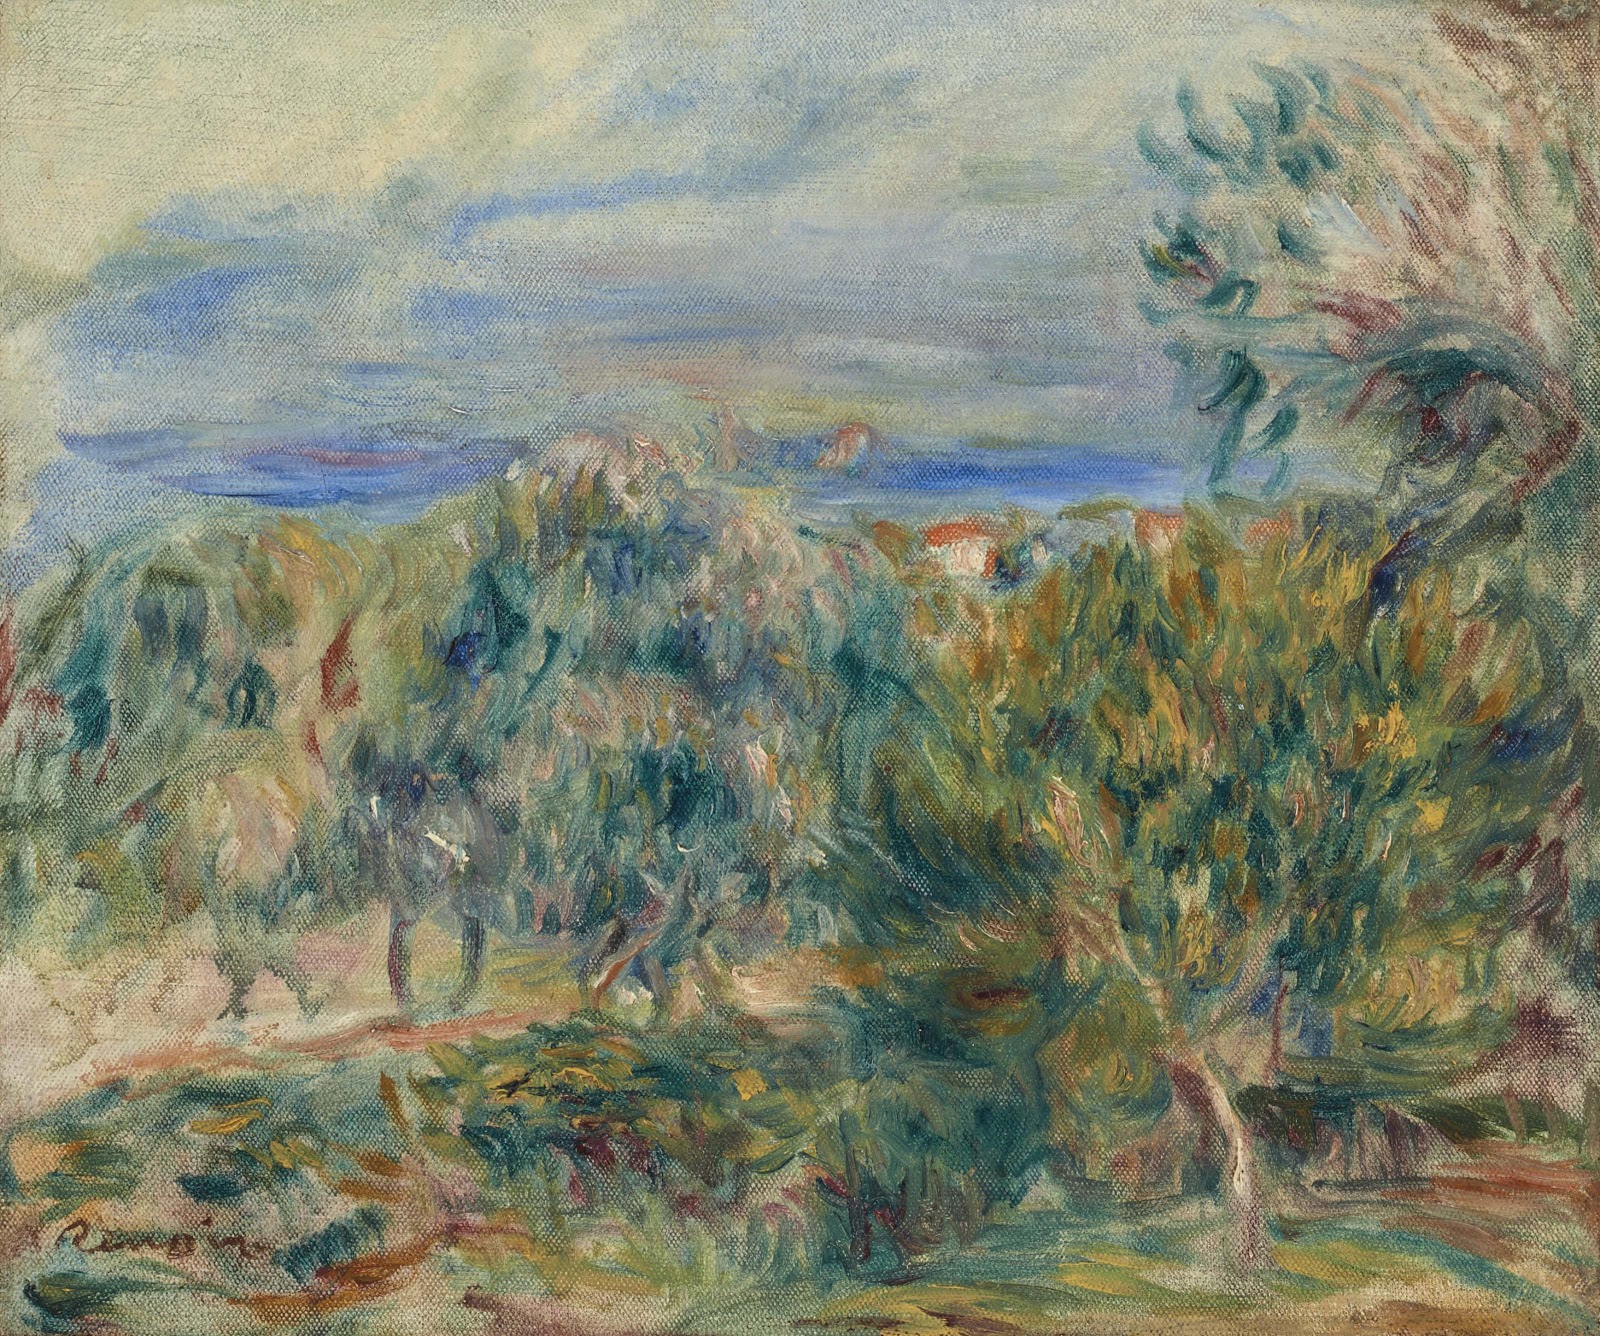 Pierre+Auguste+Renoir-1841-1-19 (842).jpg